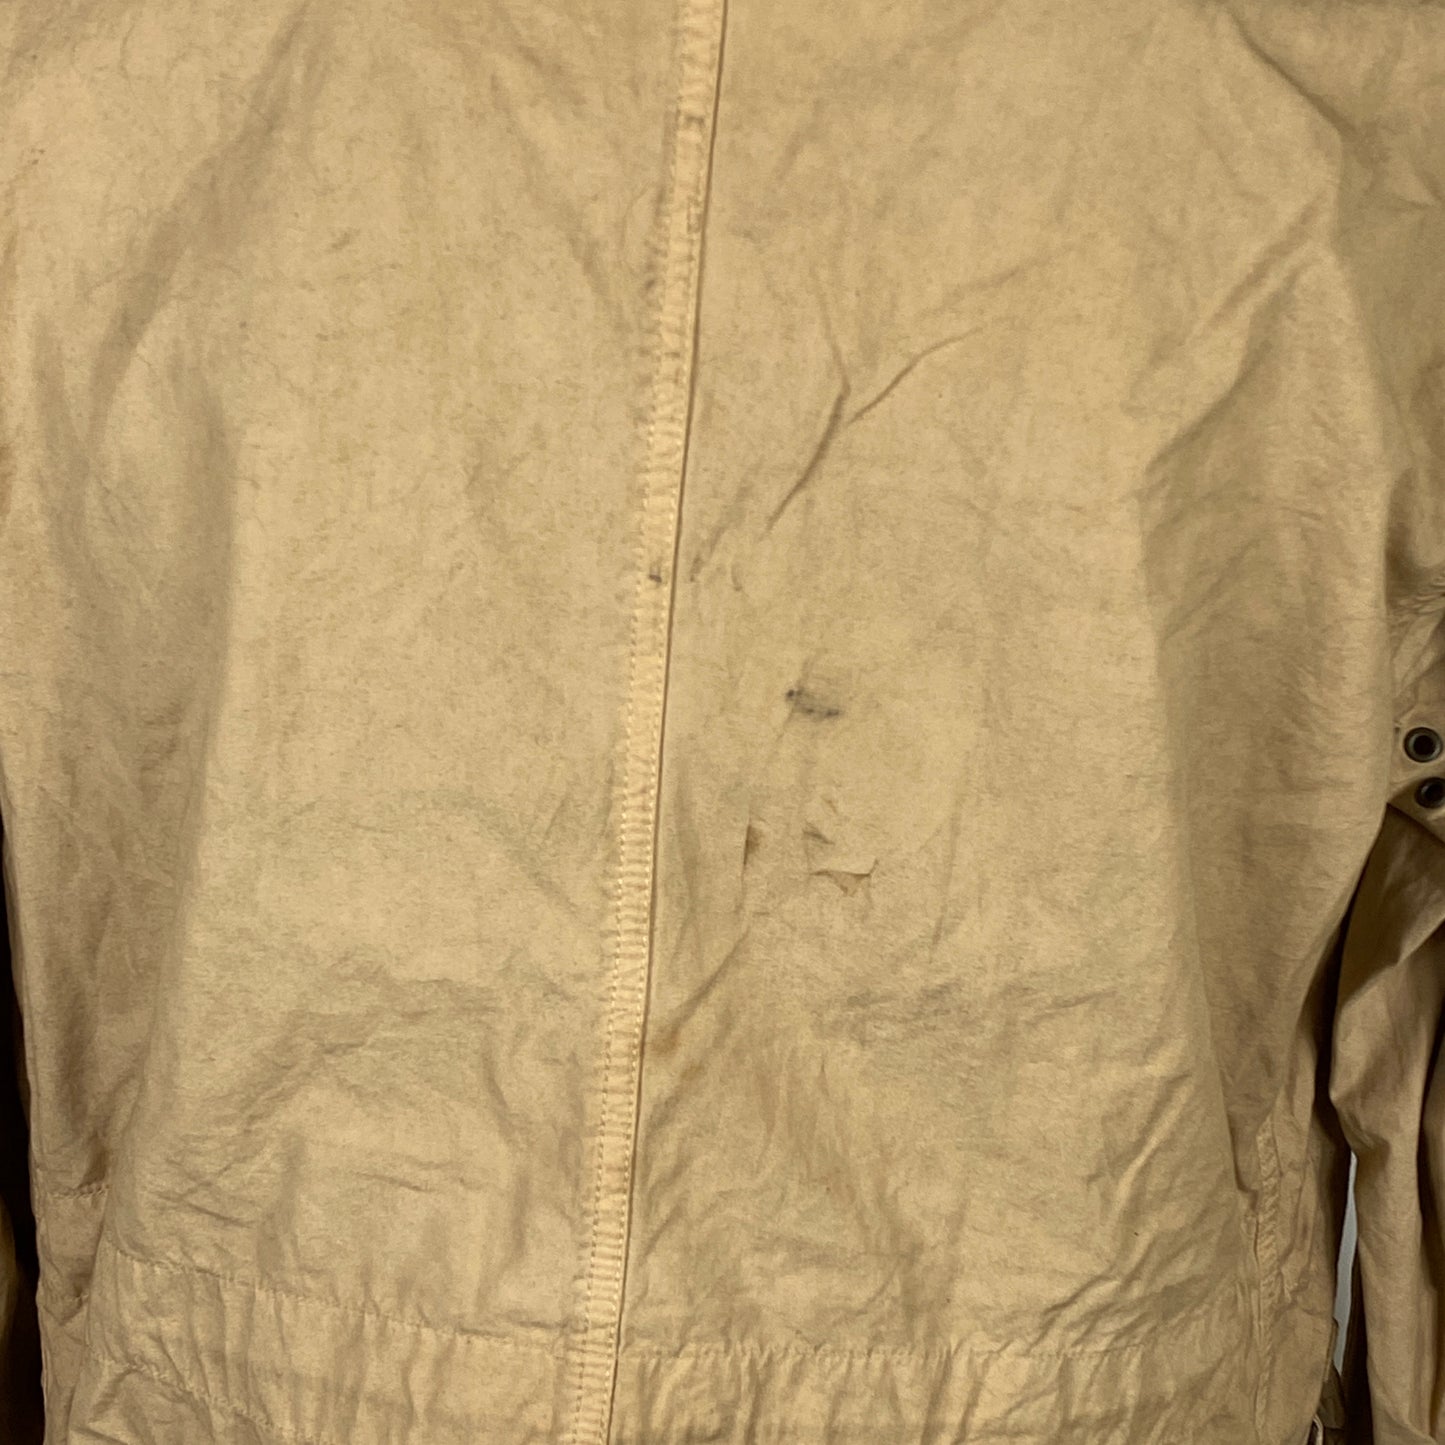 Giacca Vintage da uomo Barbour Beige leggera XLarge Man Beige Lightweight Jacket size XL